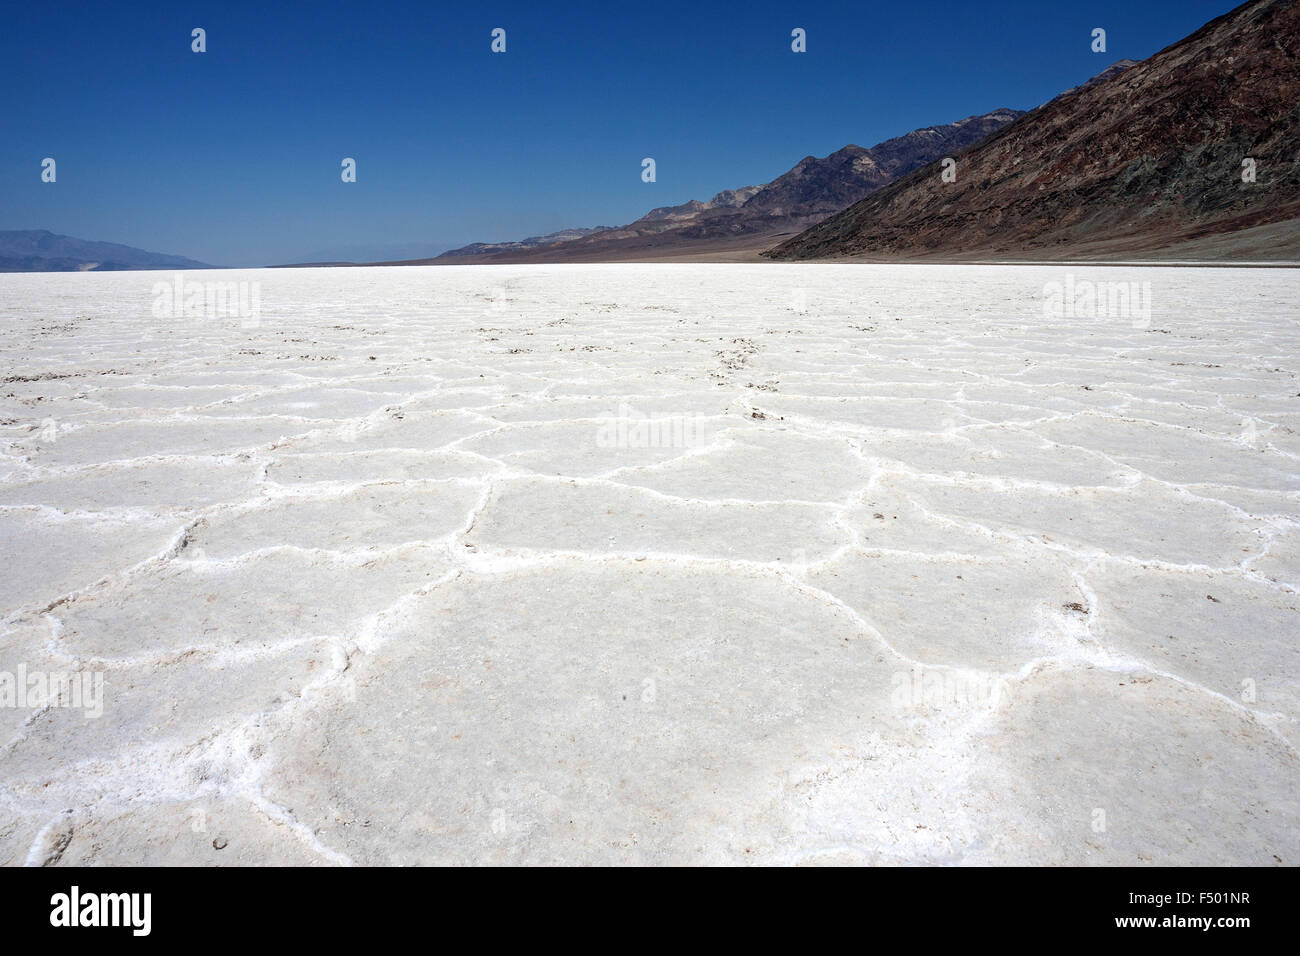 Salzkruste in Badwater Basin Salzpfanne, tiefsten Punkt in Nordamerika, Death Valley, Mojave-Wüste, Kalifornien, USA Stockfoto